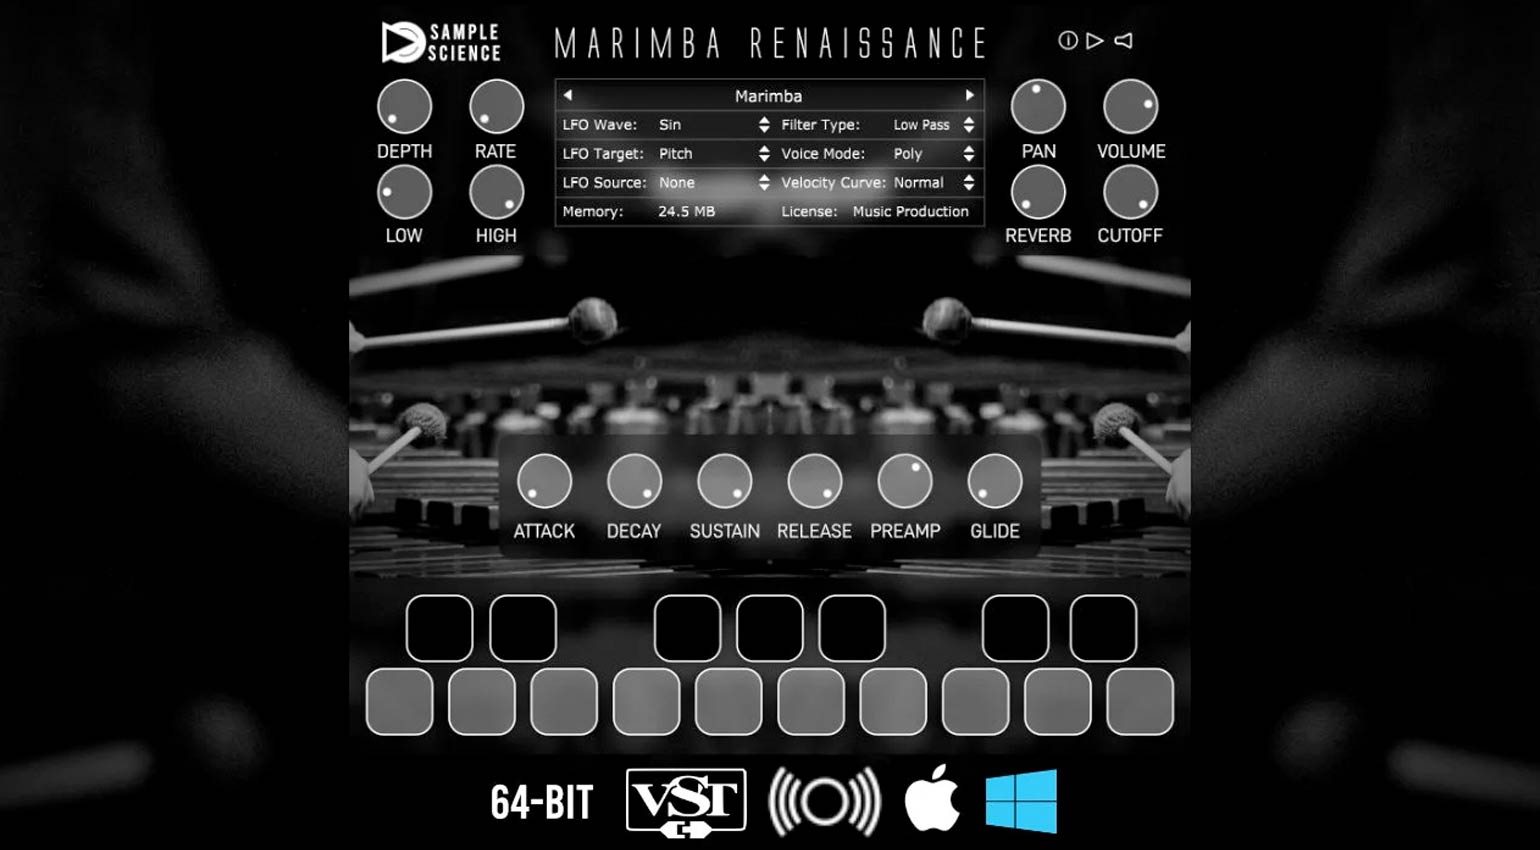 SampleScience Marimba Renaissance